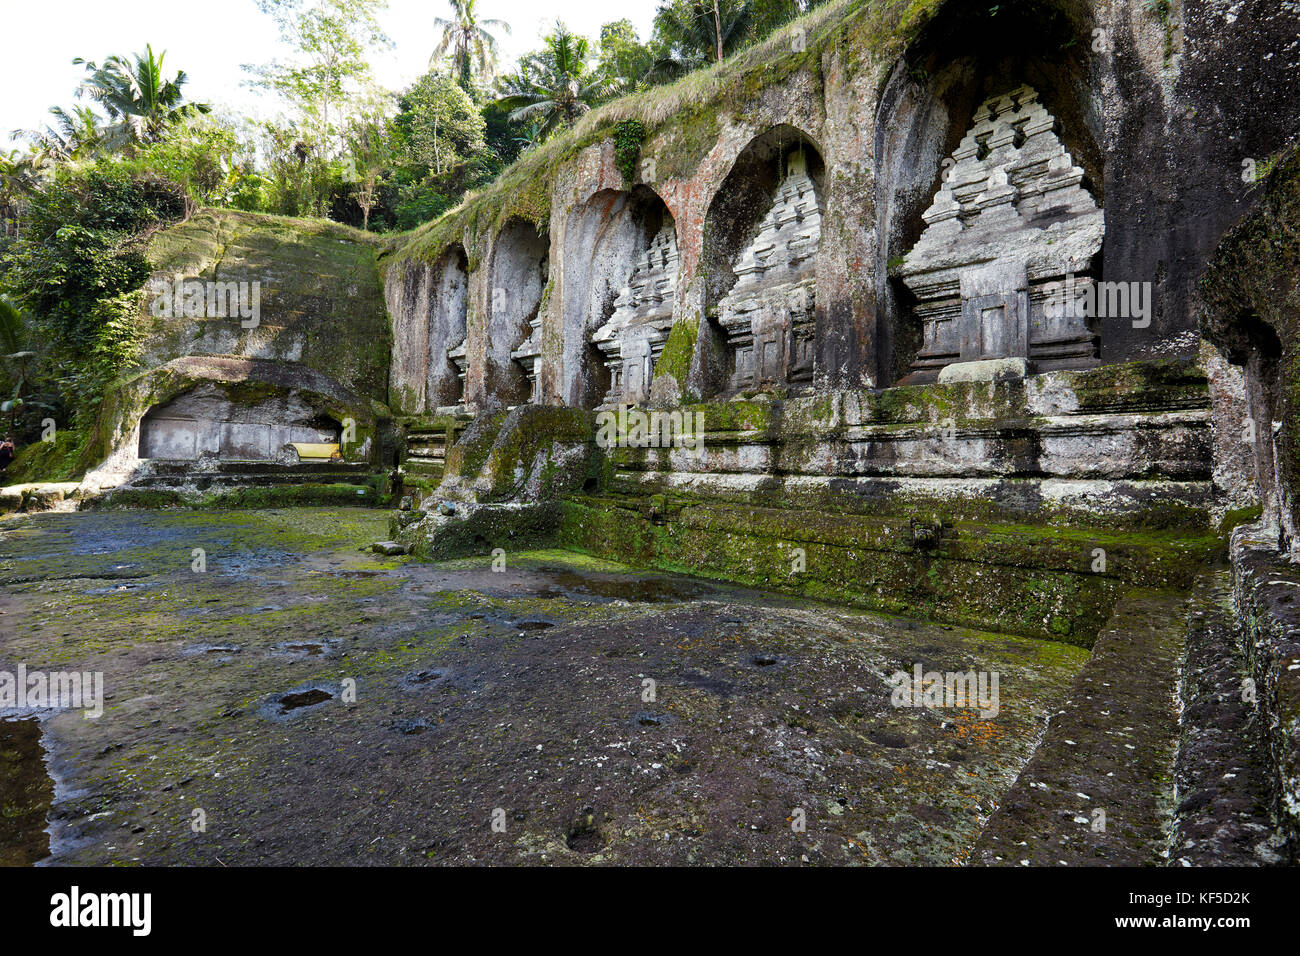 Rock cut Schreine in Gunung Kawi, aus dem 11. Jahrhundert Tempel und Grabkunst komplex. Tampaksiring, Bali, Indonesien. Stockfoto